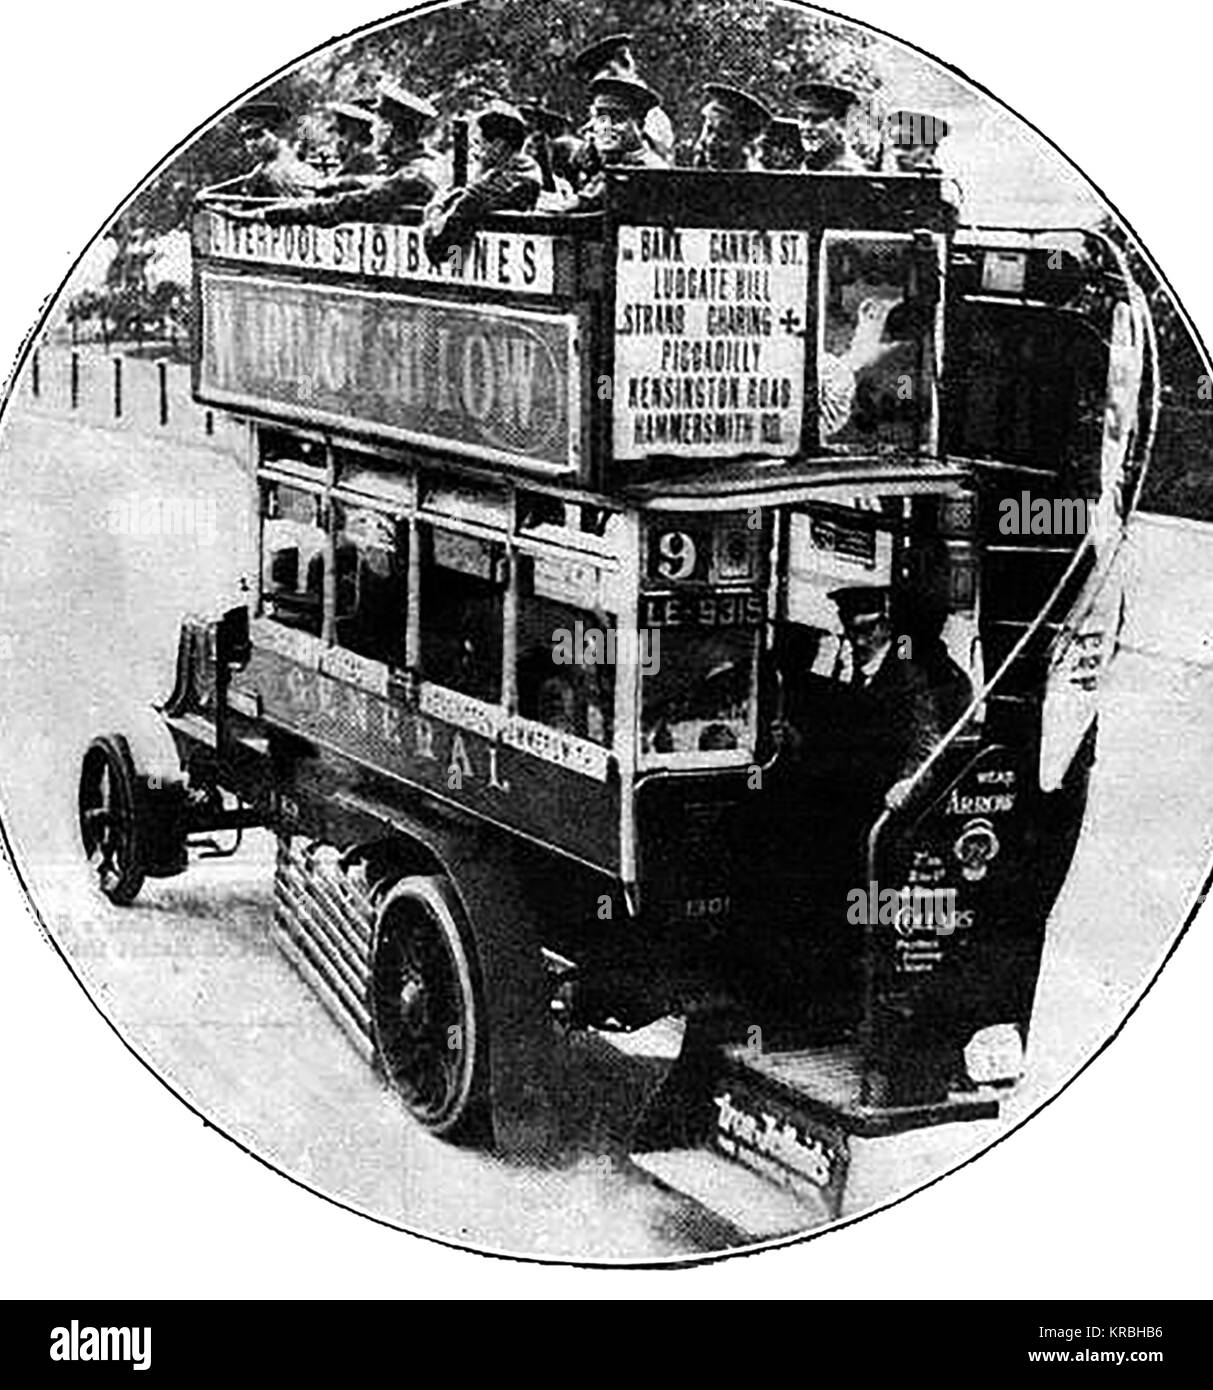 Weltkrieg ein Foto - WWI Troop Transport - alle Londoner Busse beschlagnahmt wurden neu mobilisiert Truppen im Jahr 1914 durchführen Stockfoto